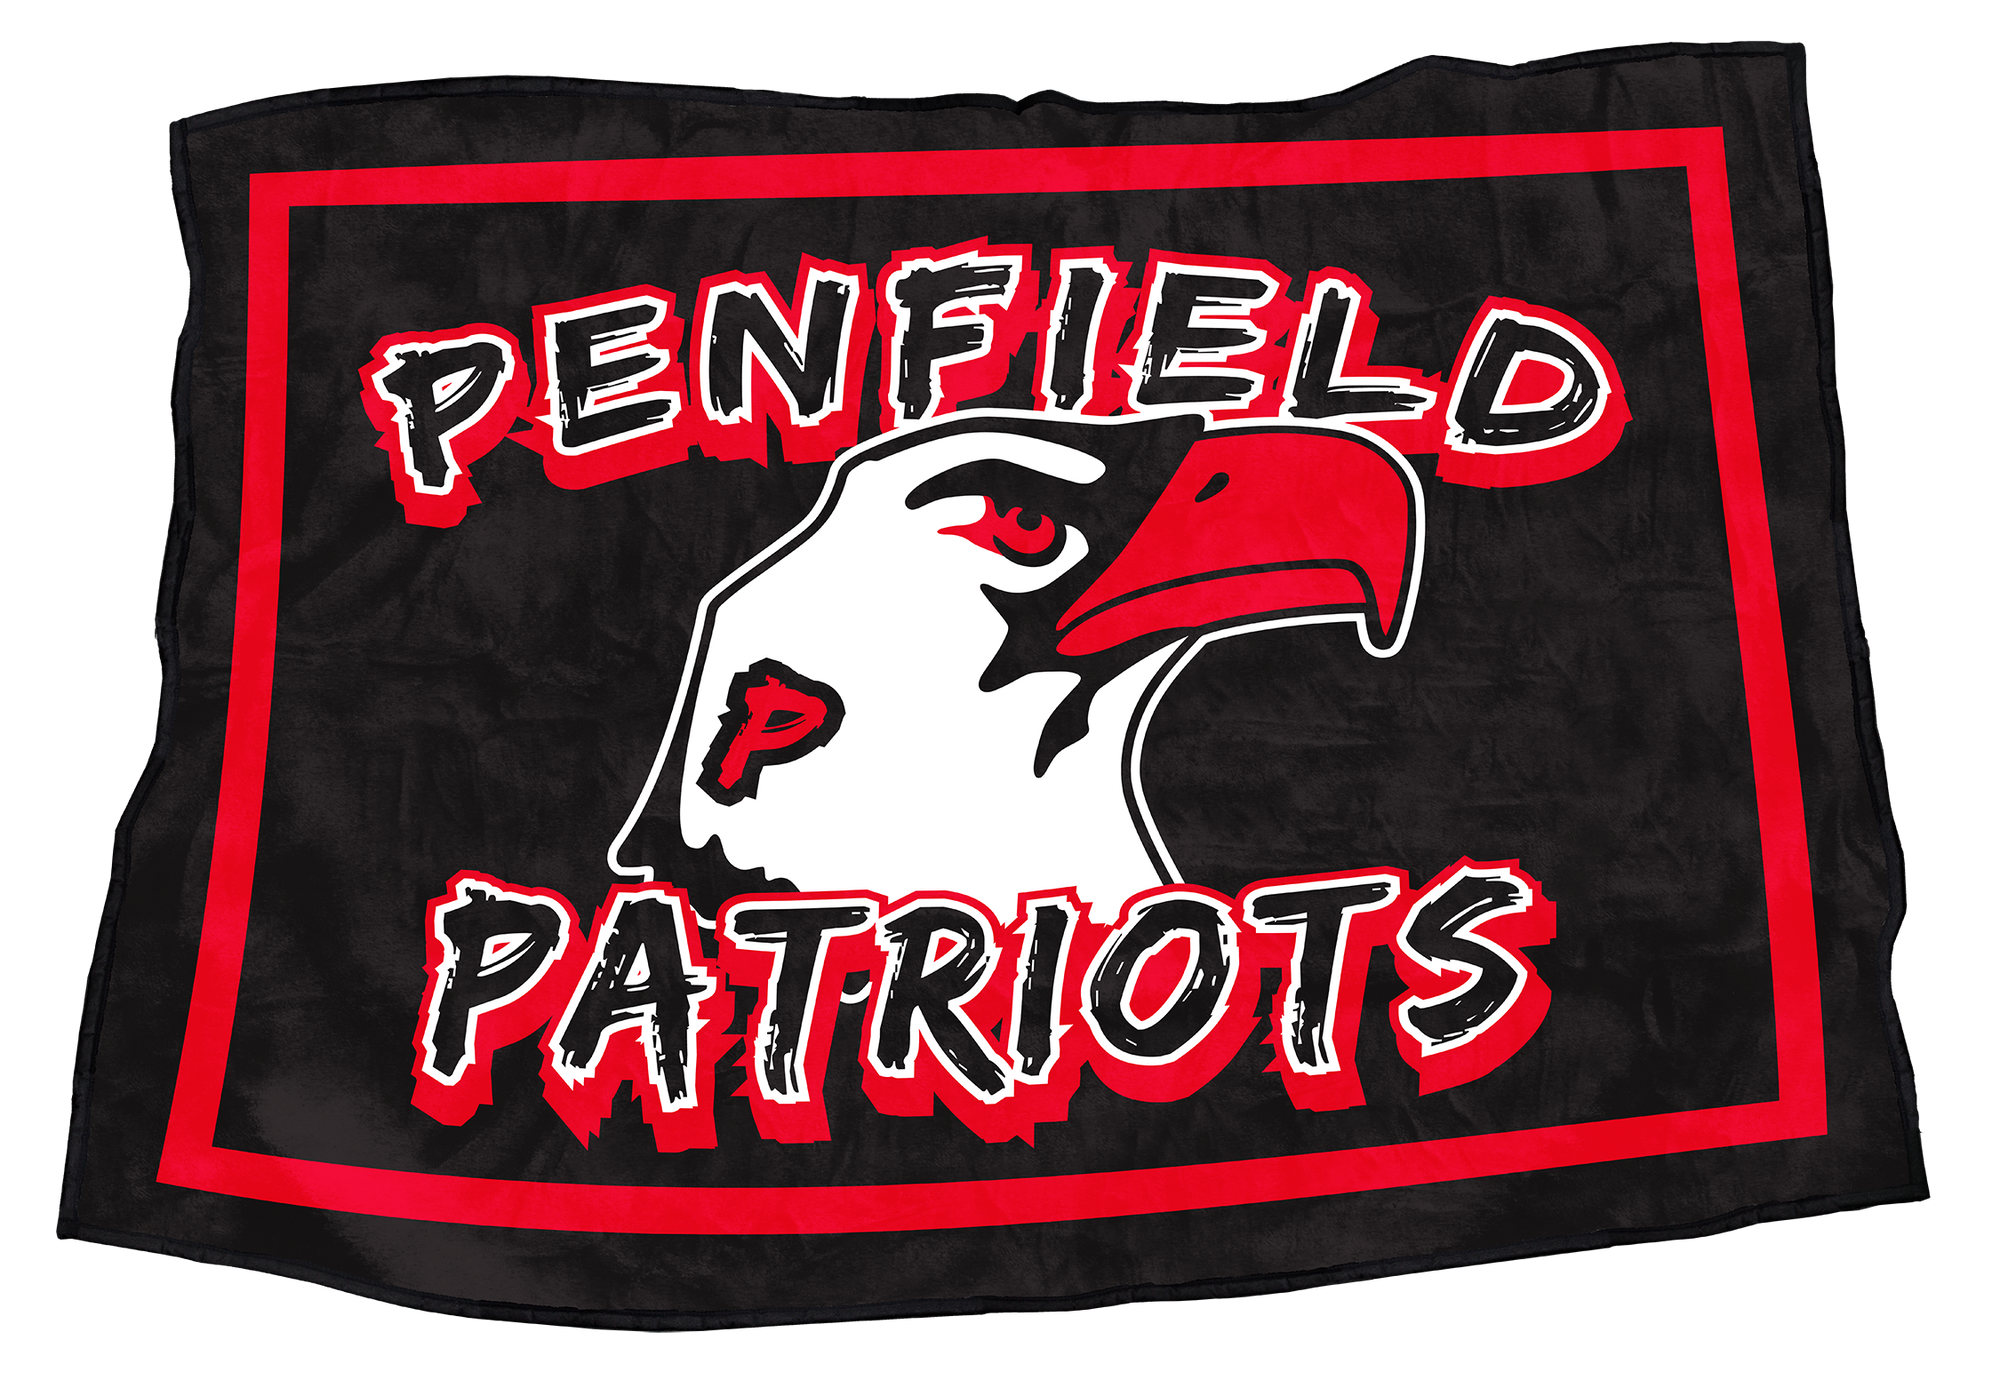 Penfield Patriots